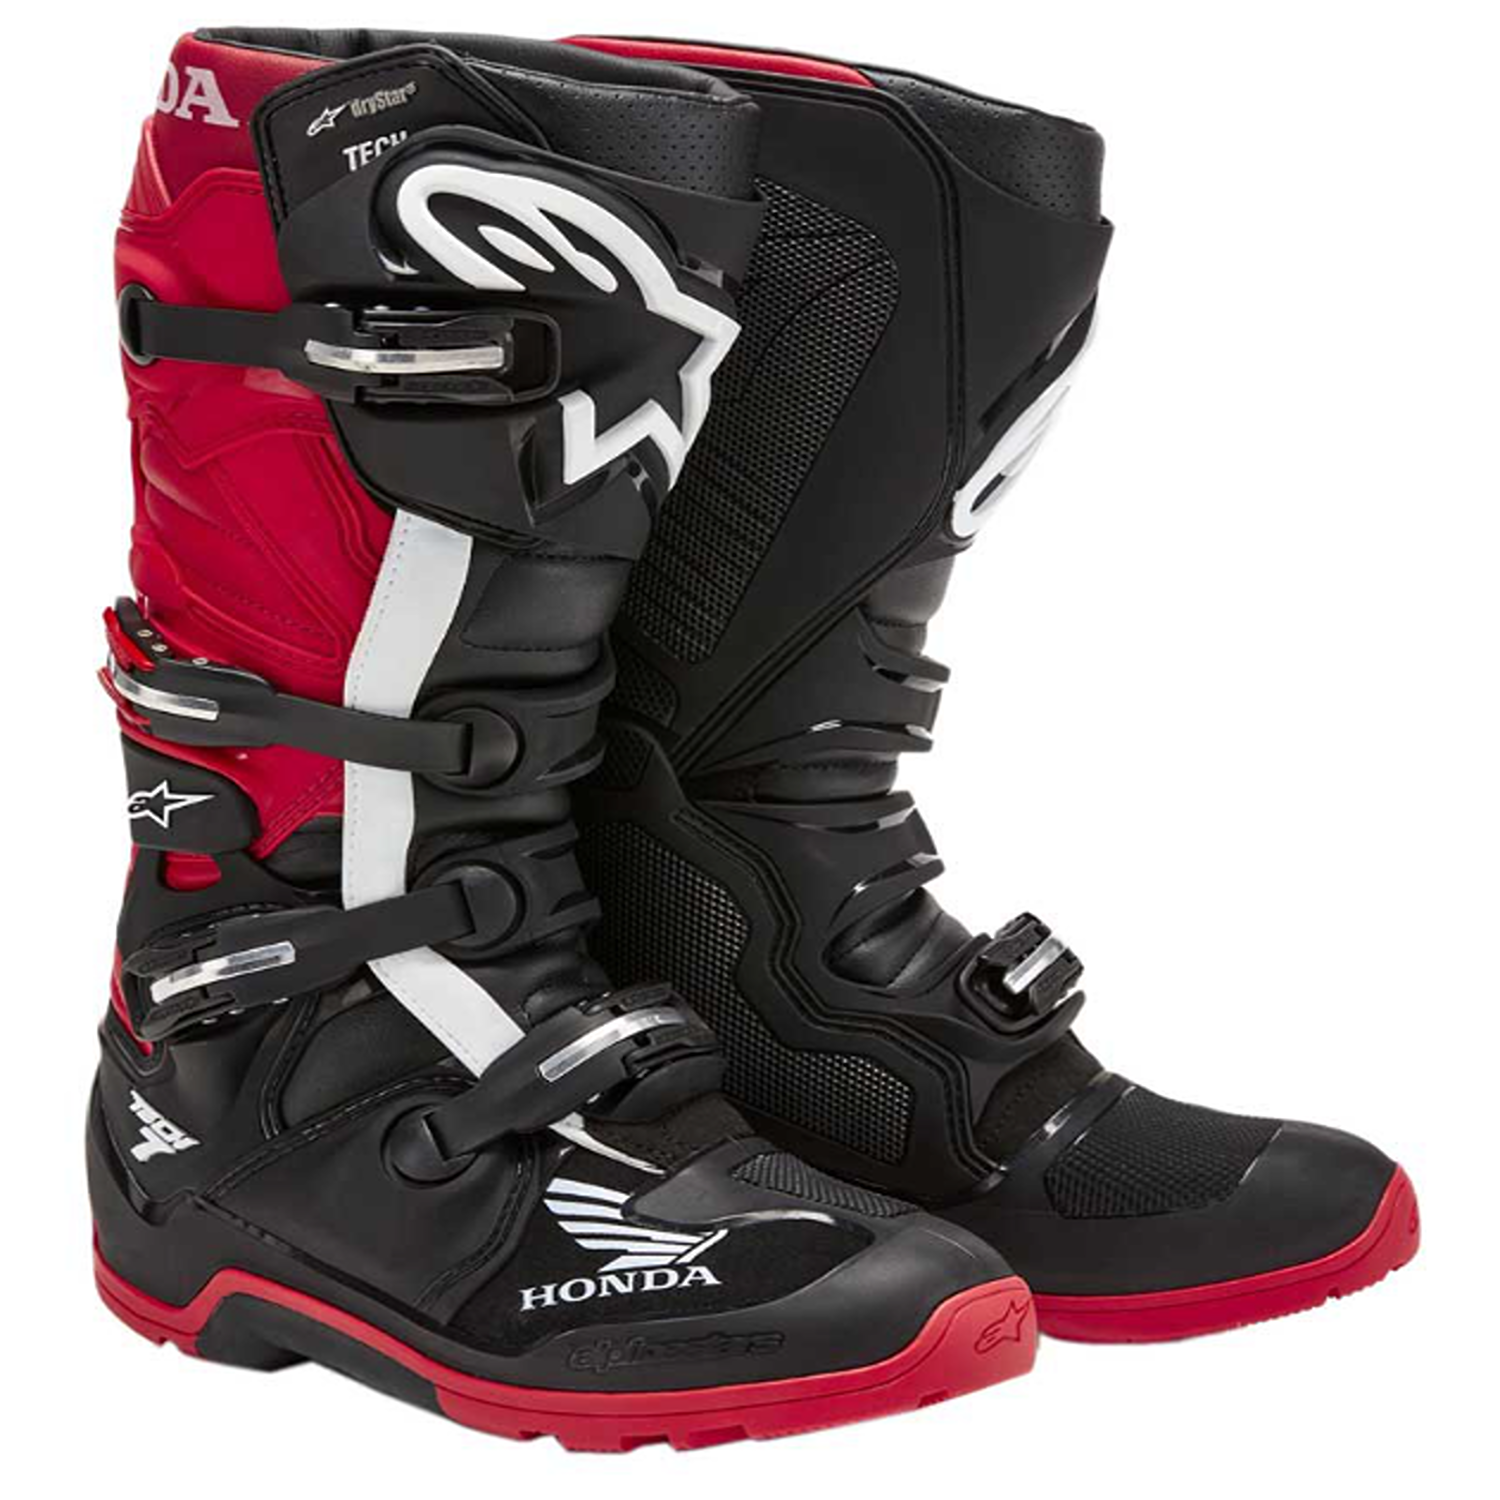 Image of Alpinestars Honda Tech 7 Enduro Drystar Boots Black Bright Red Size US 6 EN